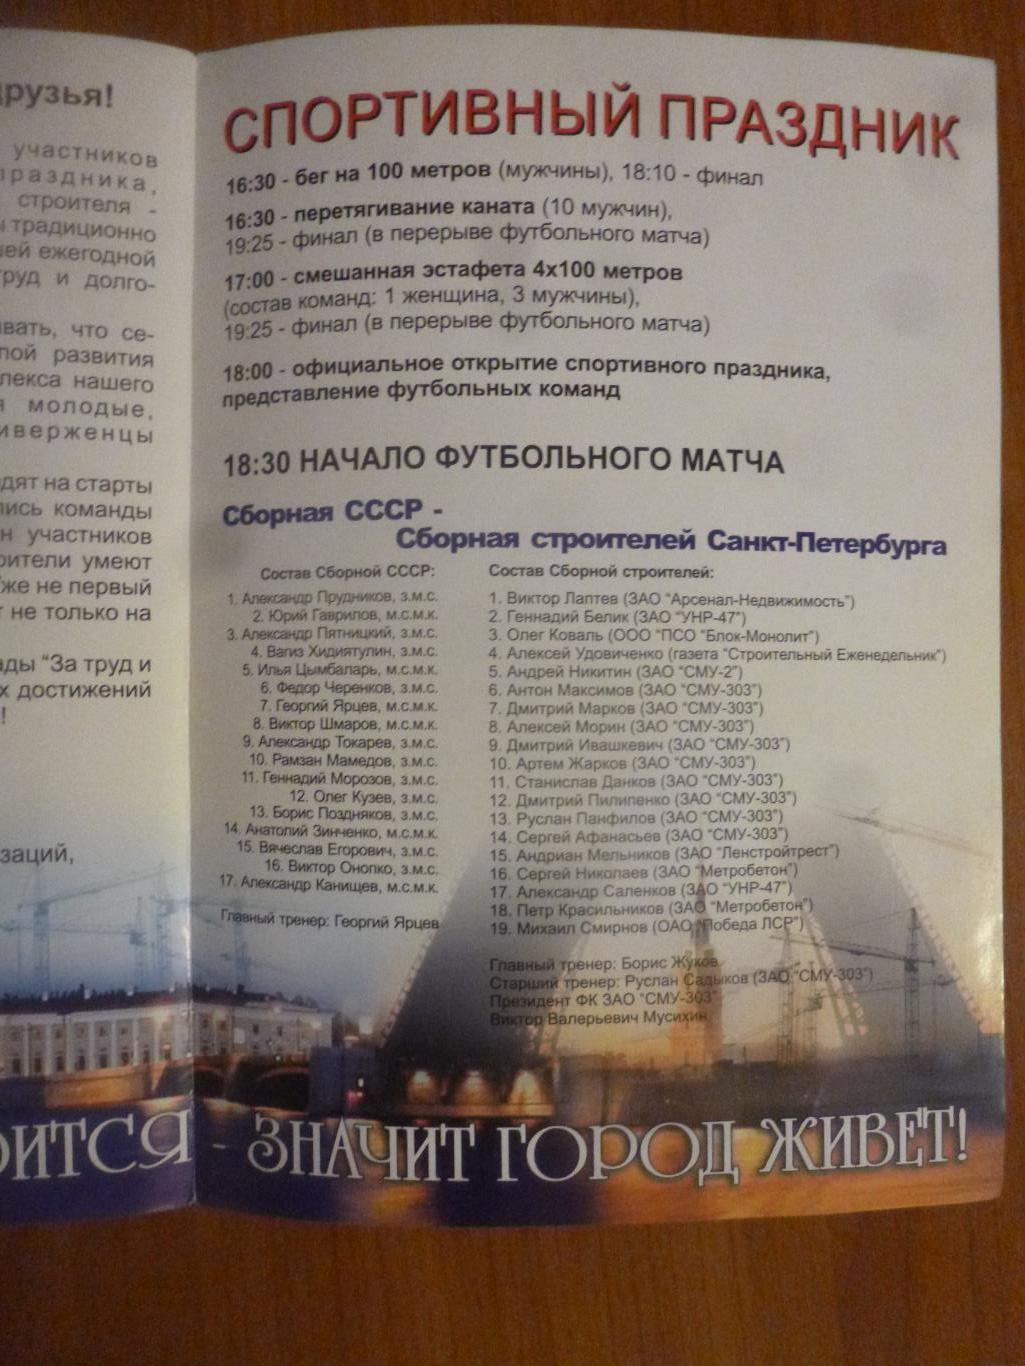 СССР (ветераны) - сборная строителей Санкт-Петербурга 2007 1